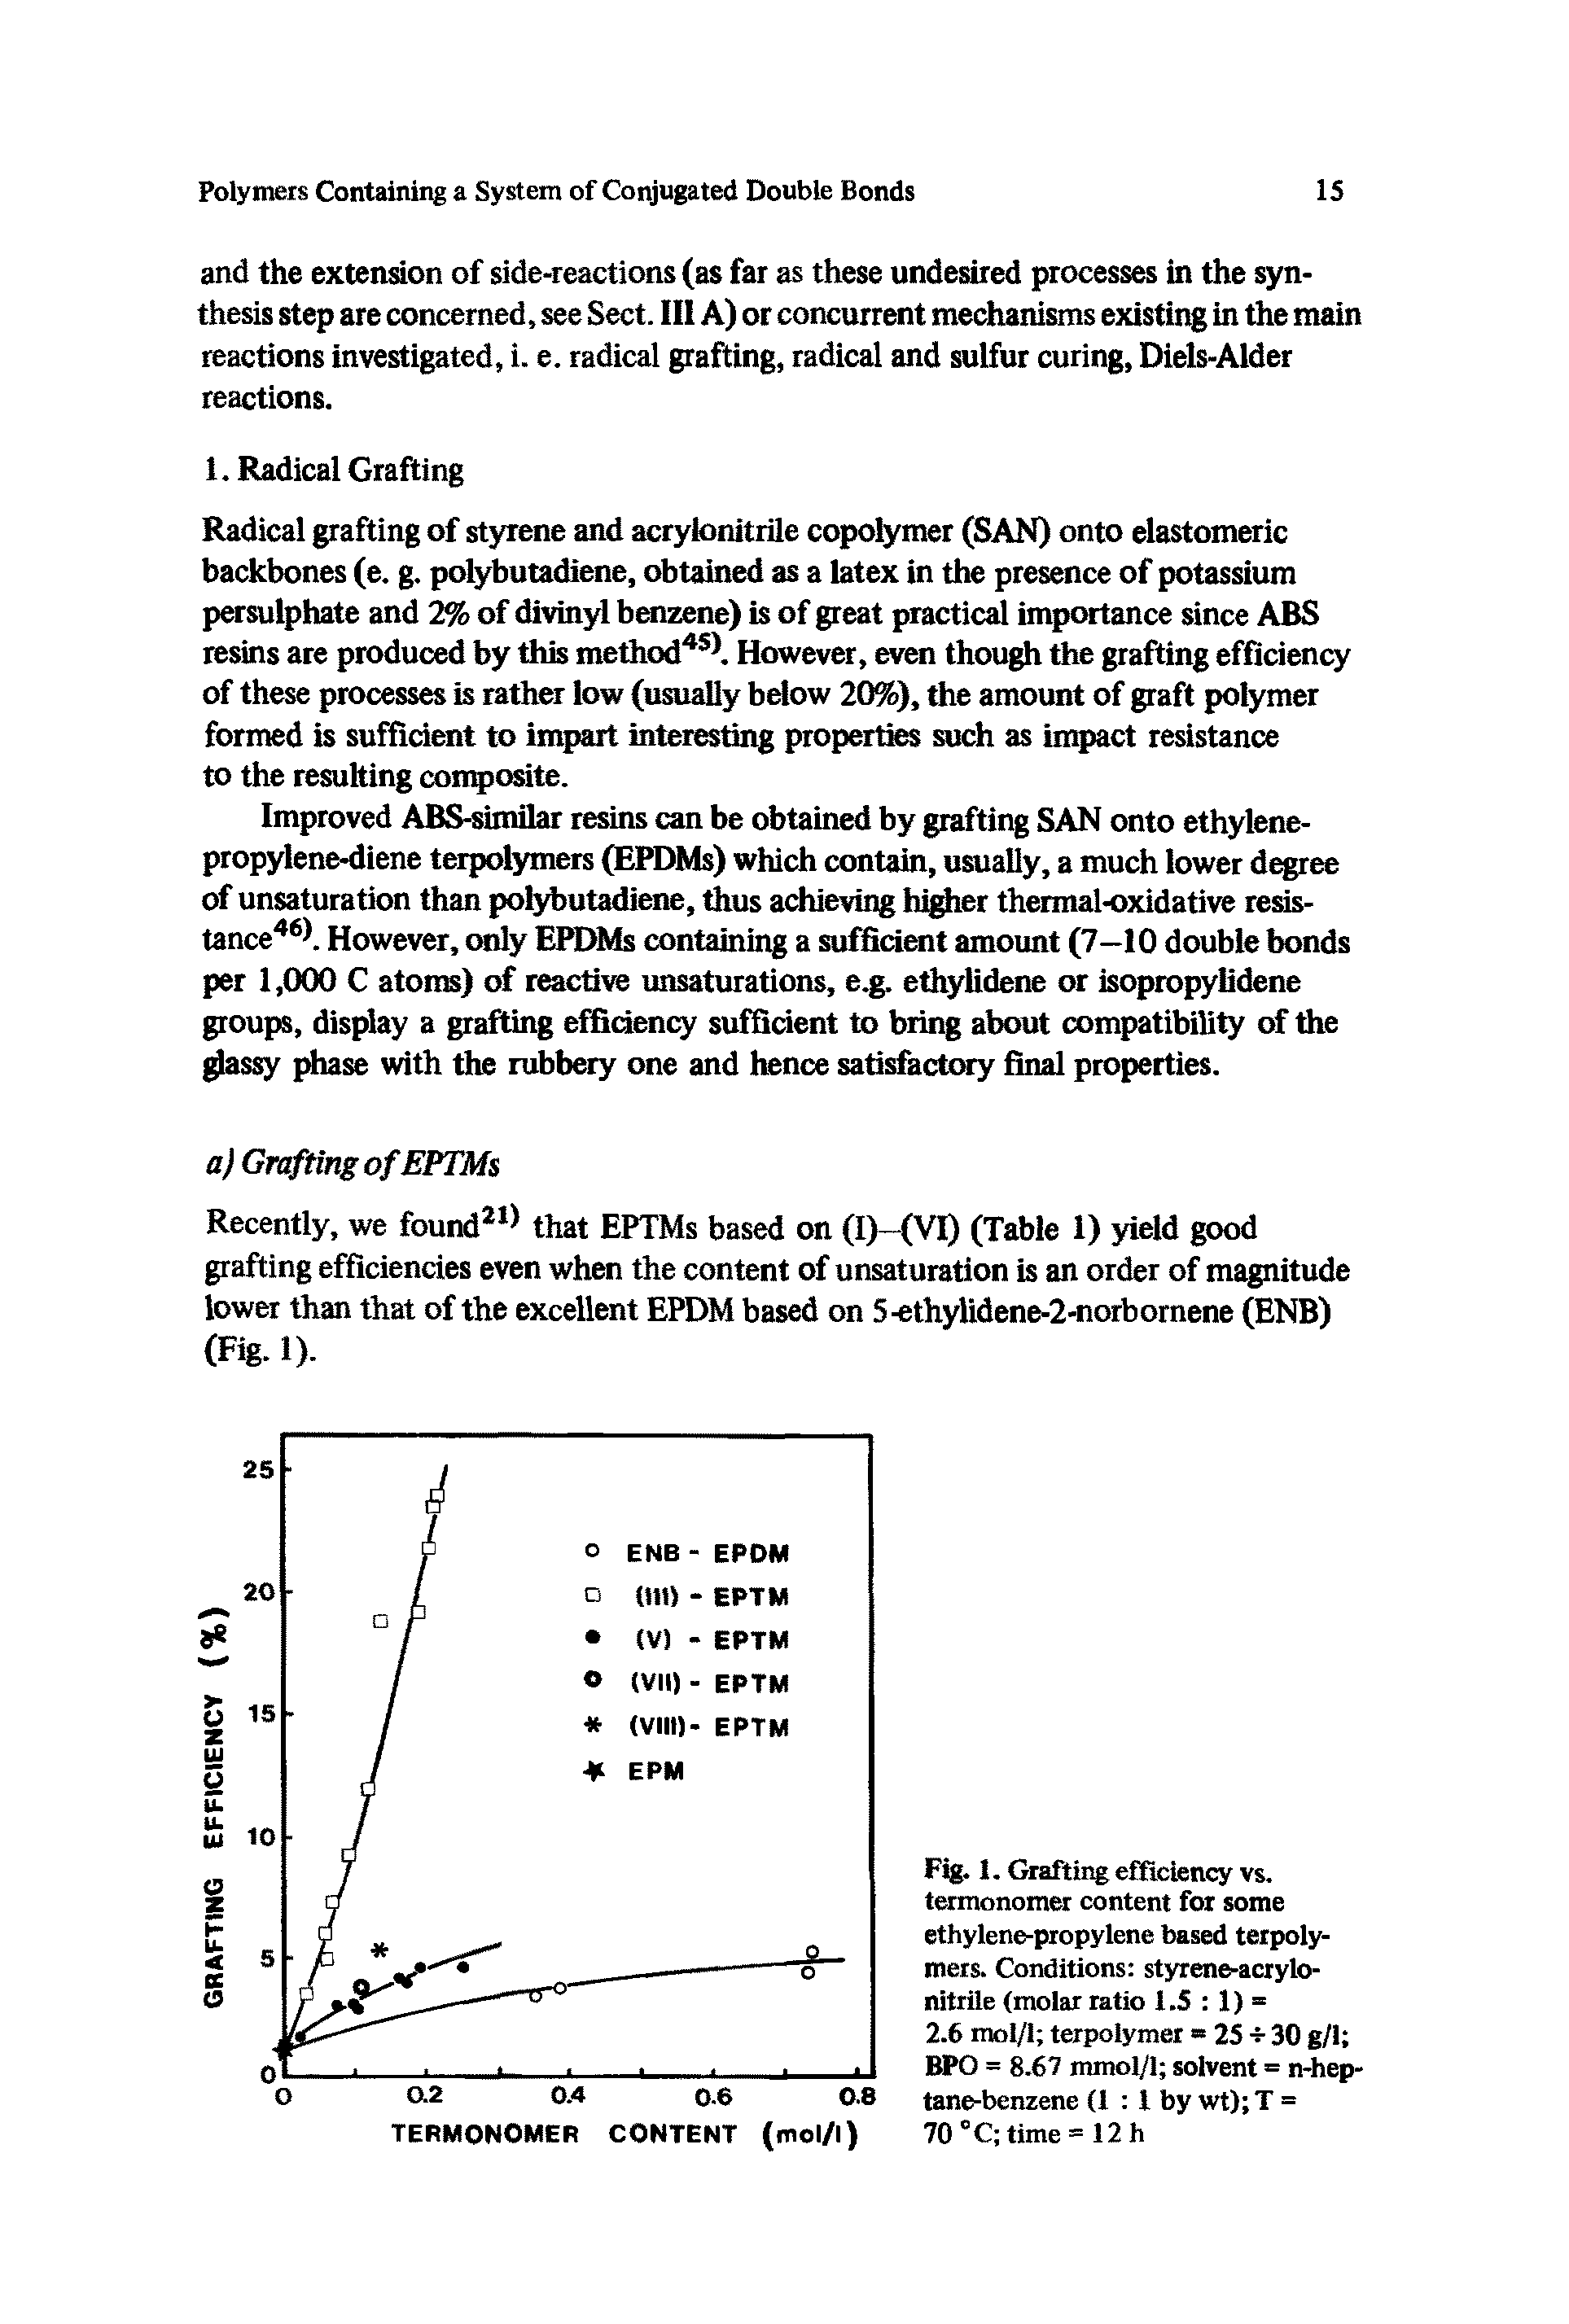 Fig. 1. Grafting efficiency vs. termonomer content for some ethylene-propylene based terpolymers. Conditions styrene-acrylonitrile (molar ratio 1.5 1) -2.6 mol/1 terpoiymer 25 -s- 30 g/i BPO = 8.67 mmol/1 solvent = n-hep-tane-benzene (1 I by wt) T =...